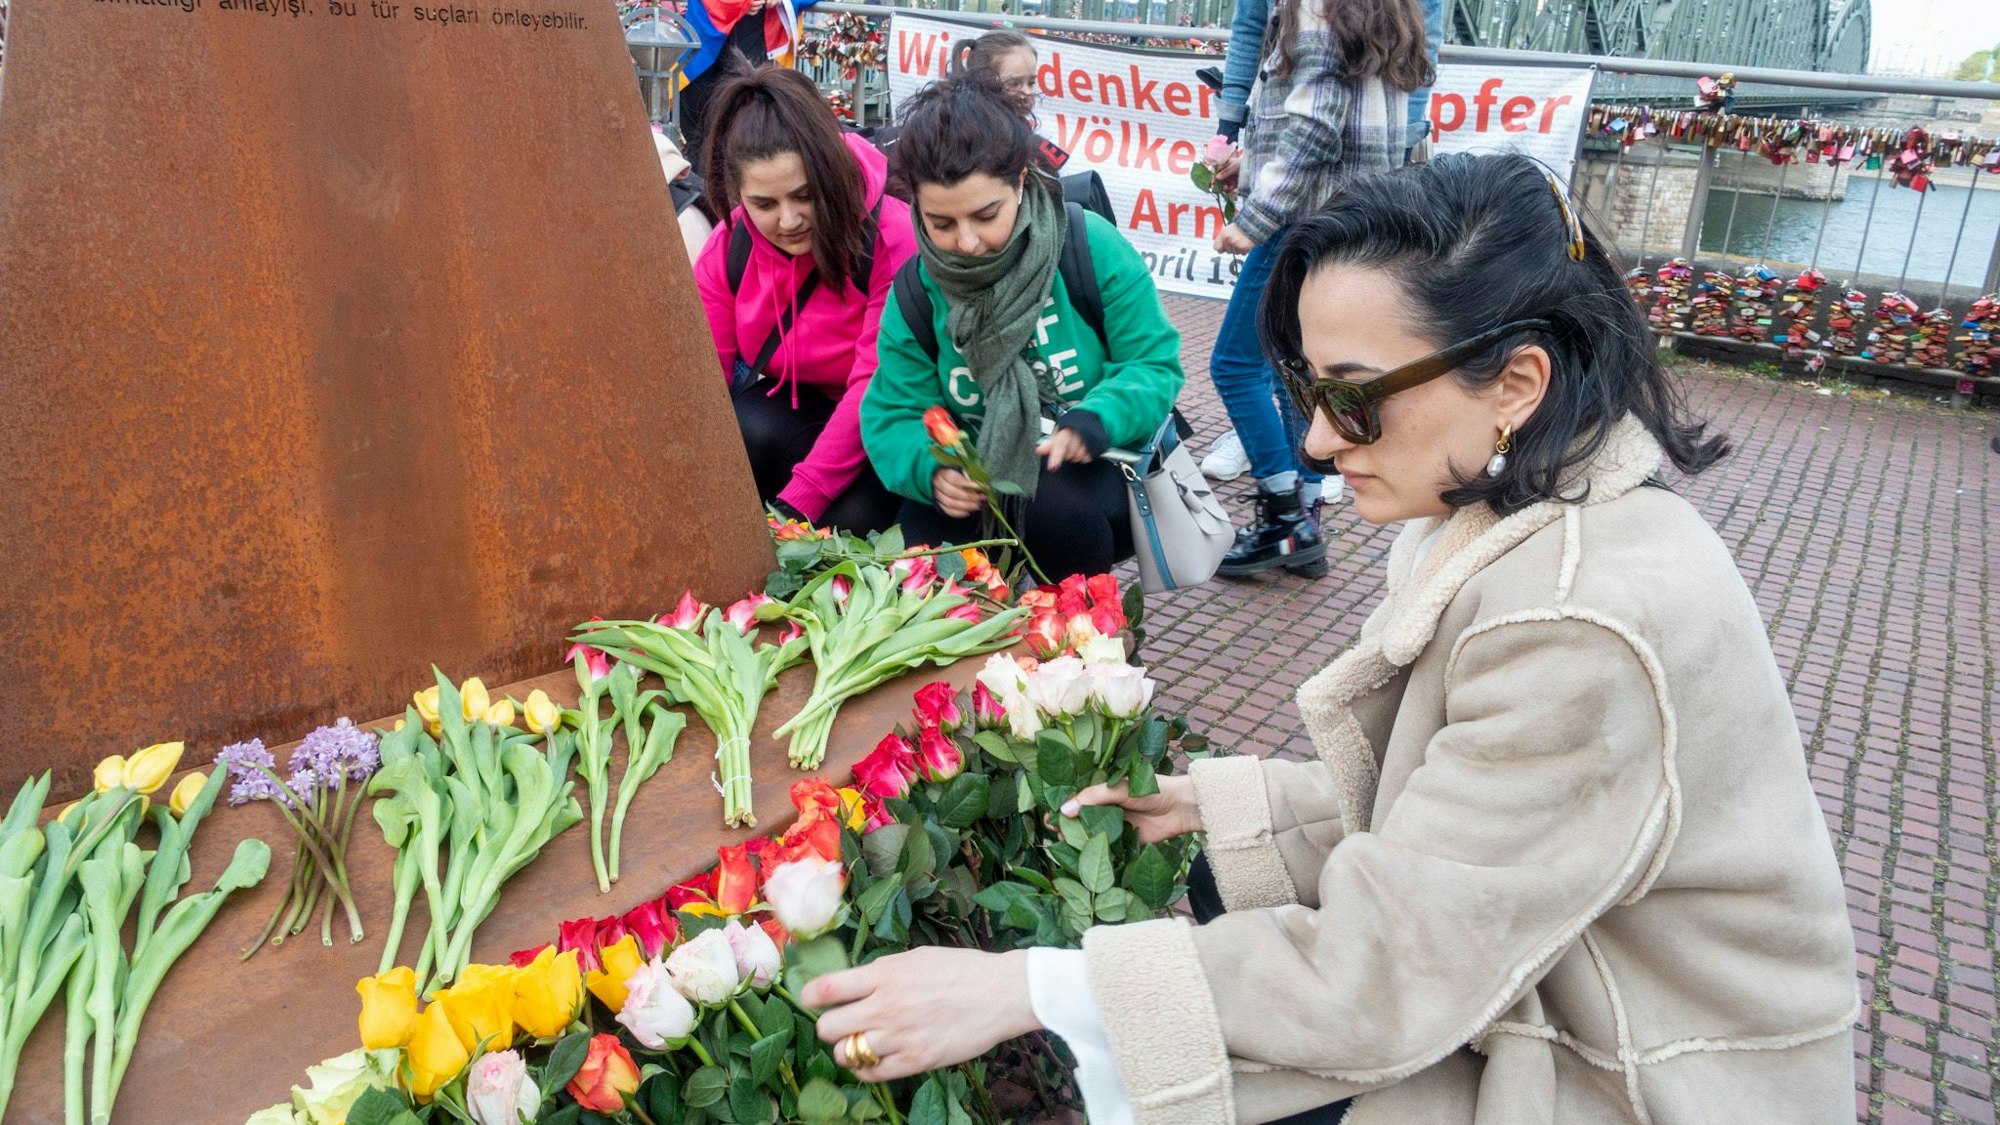 Erinnerung an den Genozid an Armeniern am Heinrich-Böll-Platz: Eine Frau mit Sonnenbrille legt Blumen vor einer Gedenkstele ab. Im Hintergrund ist die Hohenzollernbrücke zu sehen.